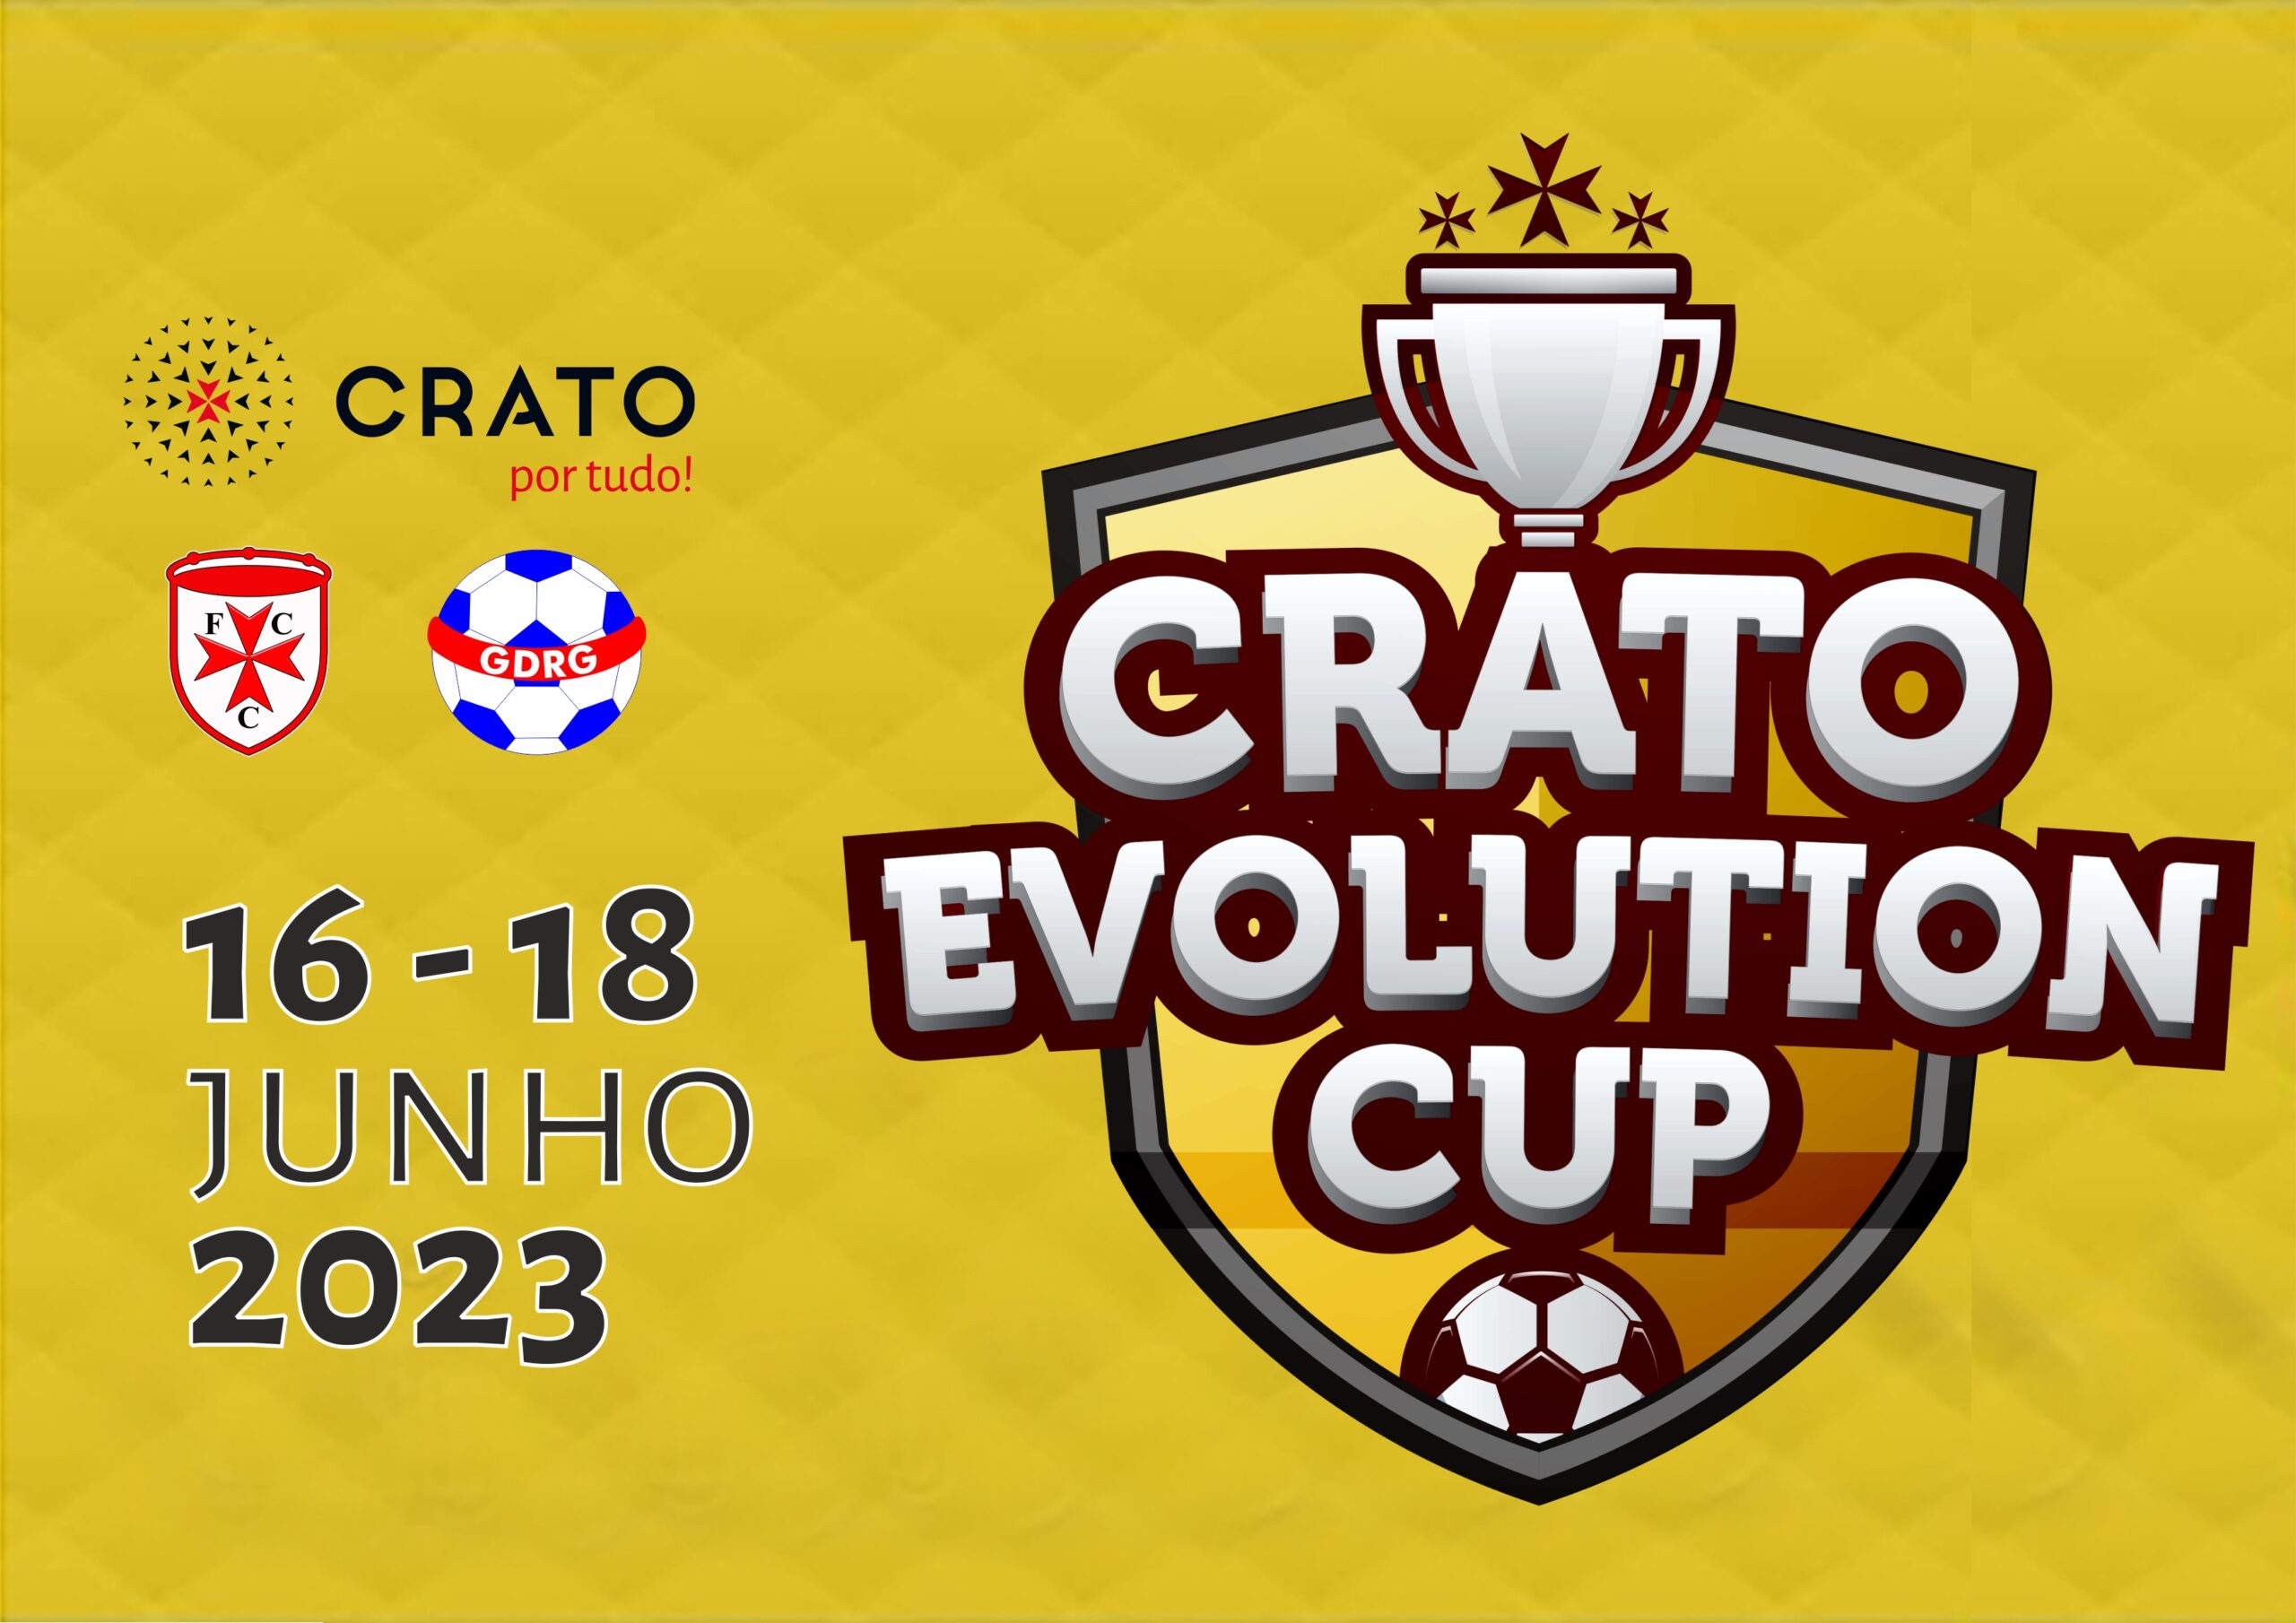 Crato Evolution Cup